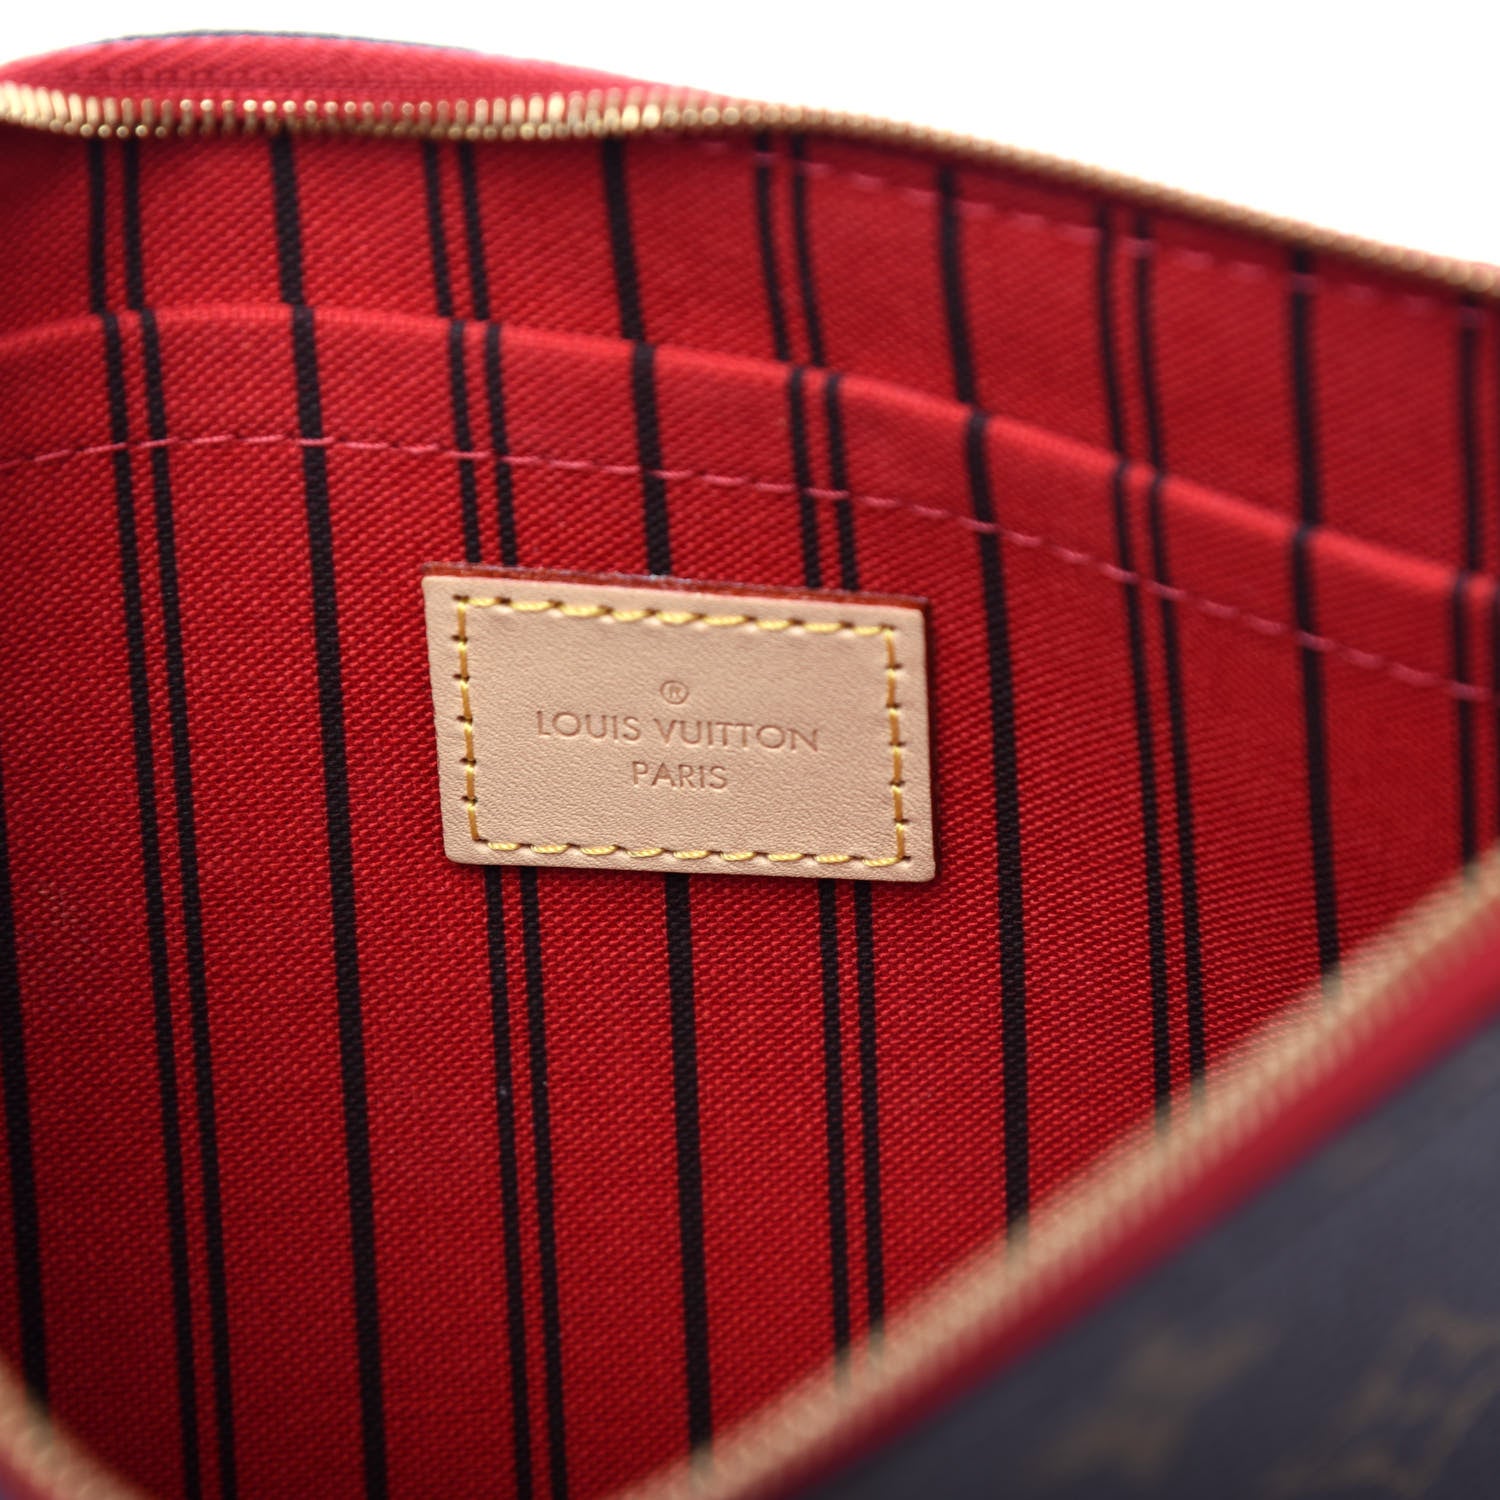 LOUIS VUITTON LIMITED EDITION MONOGRAM PATCH CITY WRISTLET/ CLUTCH BAG –  Caroline's Fashion Luxuries